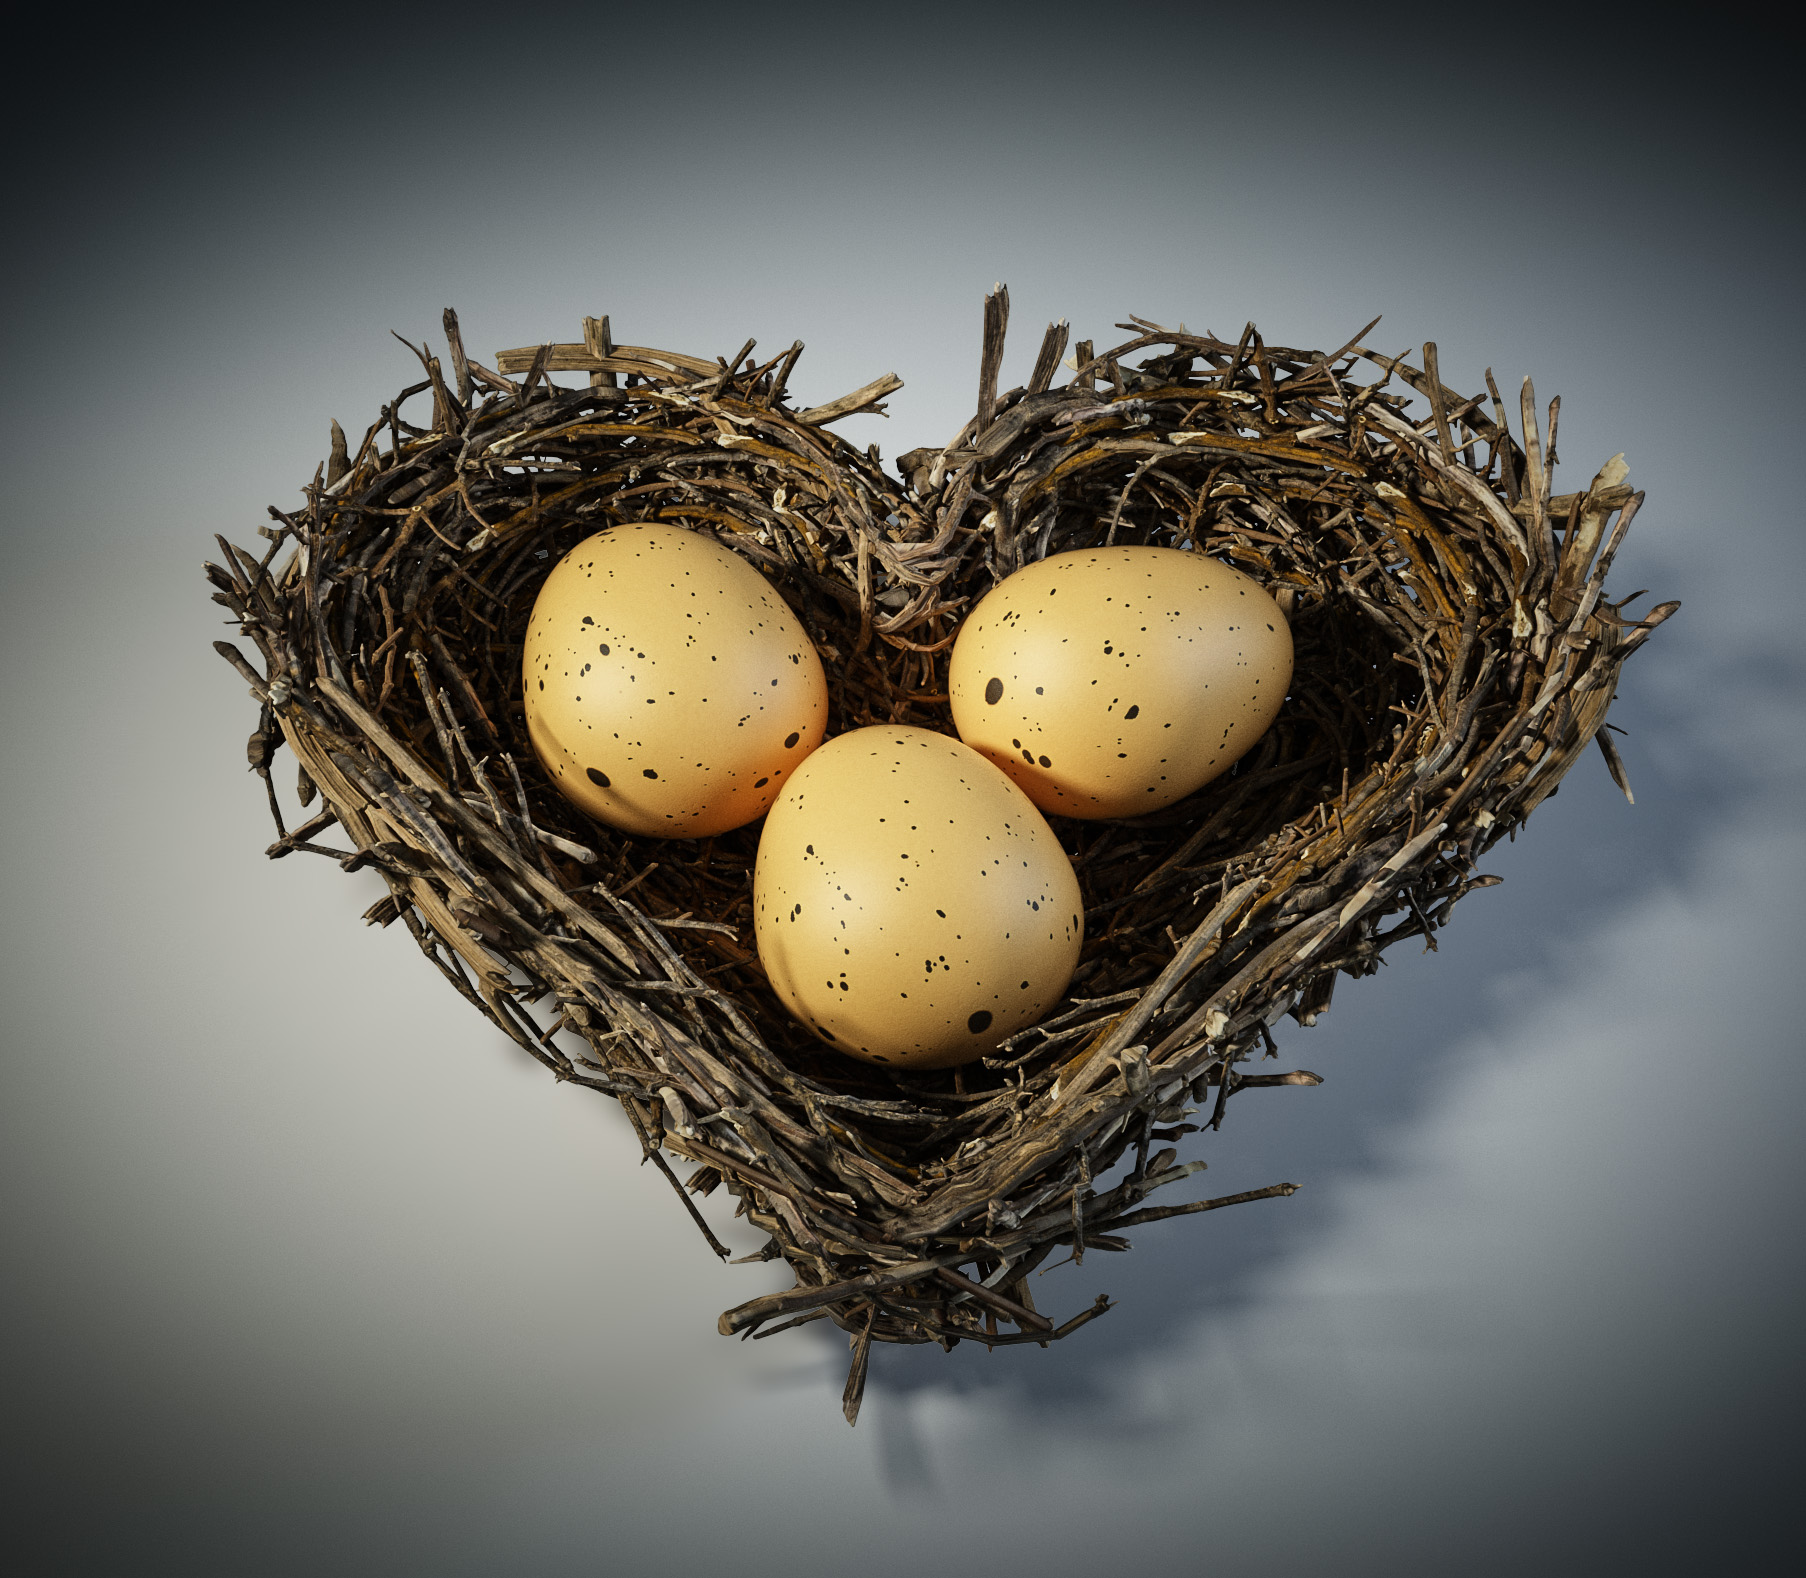 one heart formed lover Bird nest with egg fågelbo ägg hjärta